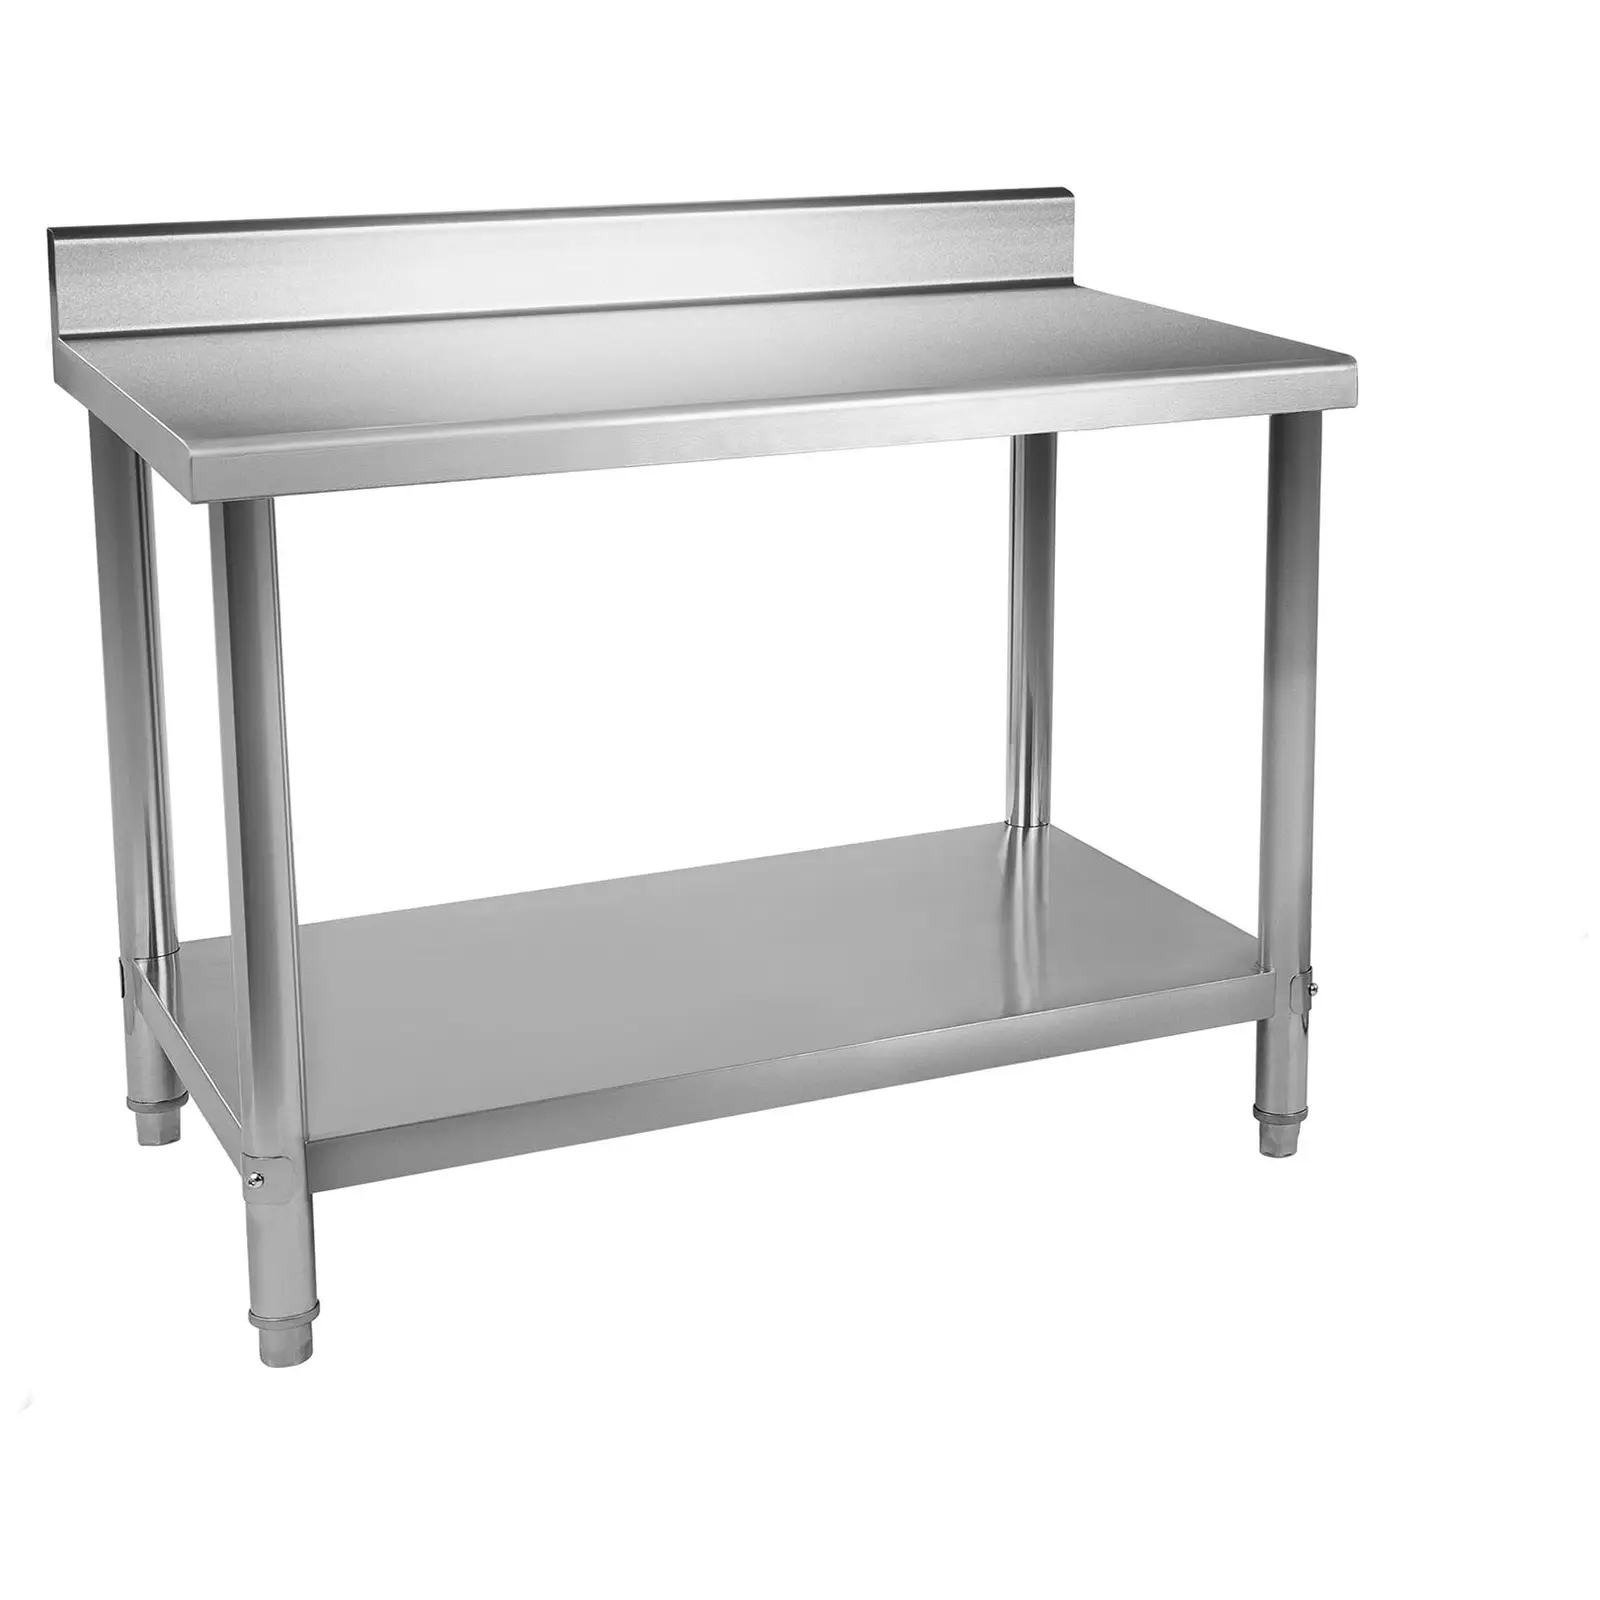 RST työpöytä - 150 x 60 cm - roiskelevy - 159 kg kantavuus